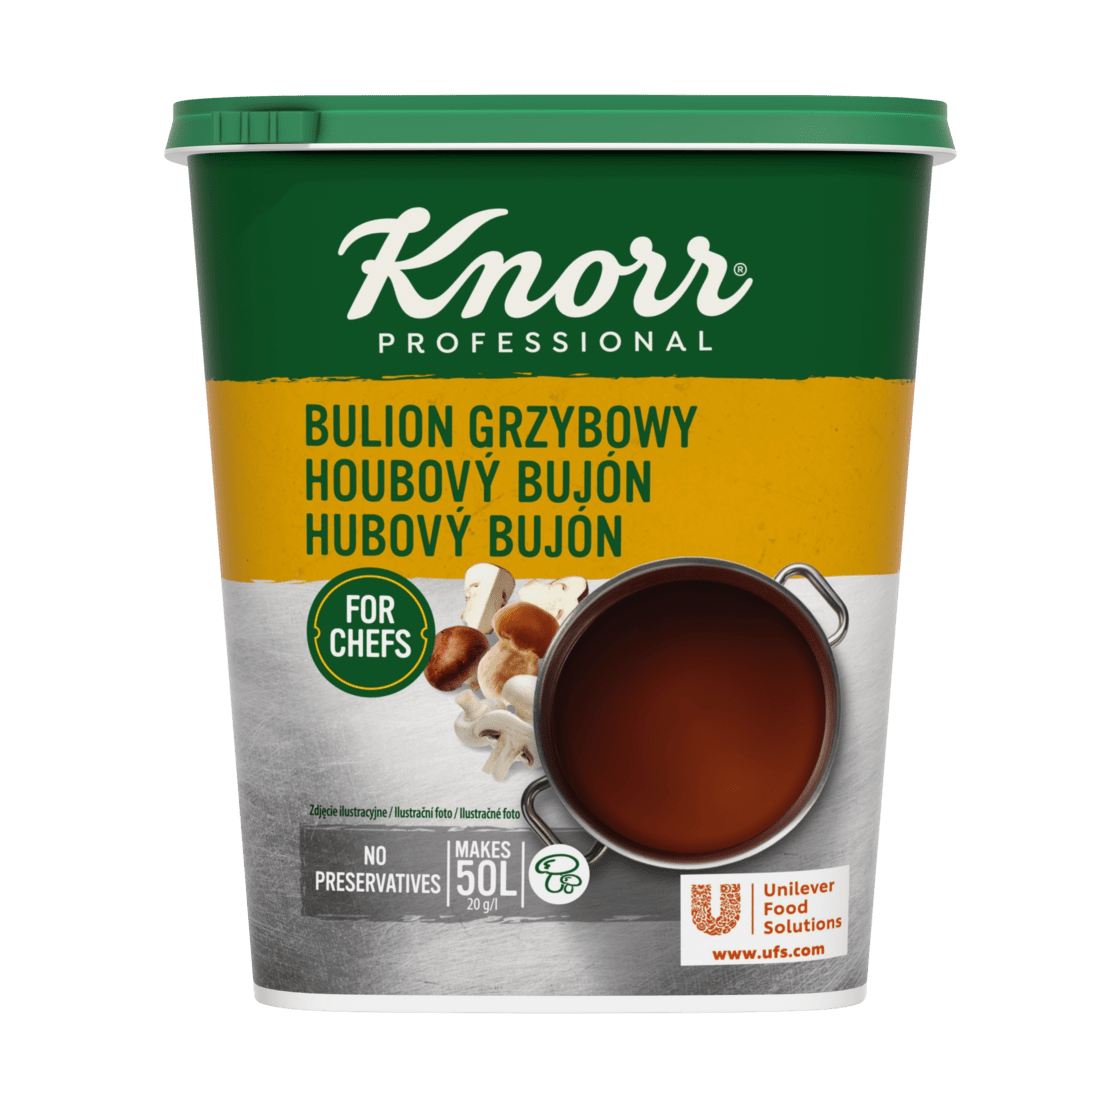 KNORR Professional Houbový bujón 1 kg - 